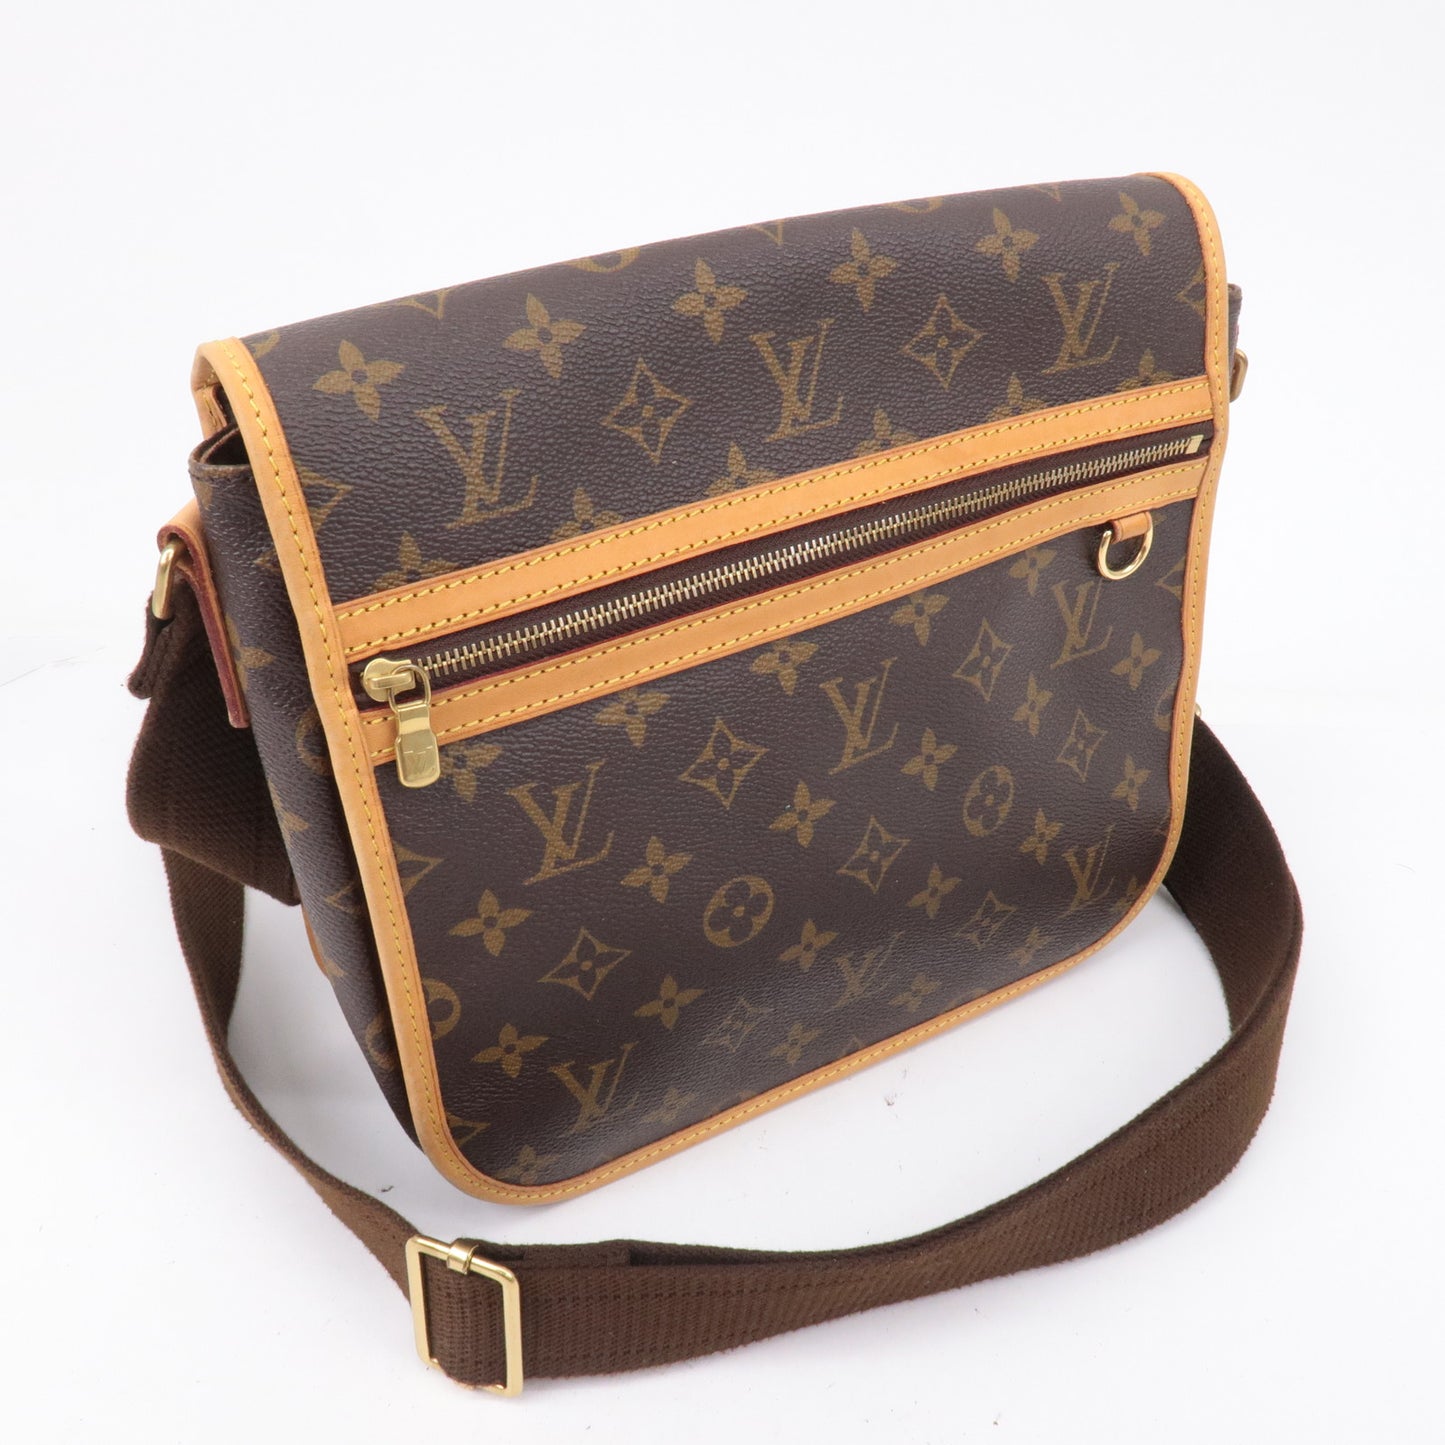 Authe-Louis-Vuitton-Monogram-Messenger-Bosphore-PM-Shoulder-Bag-M40106